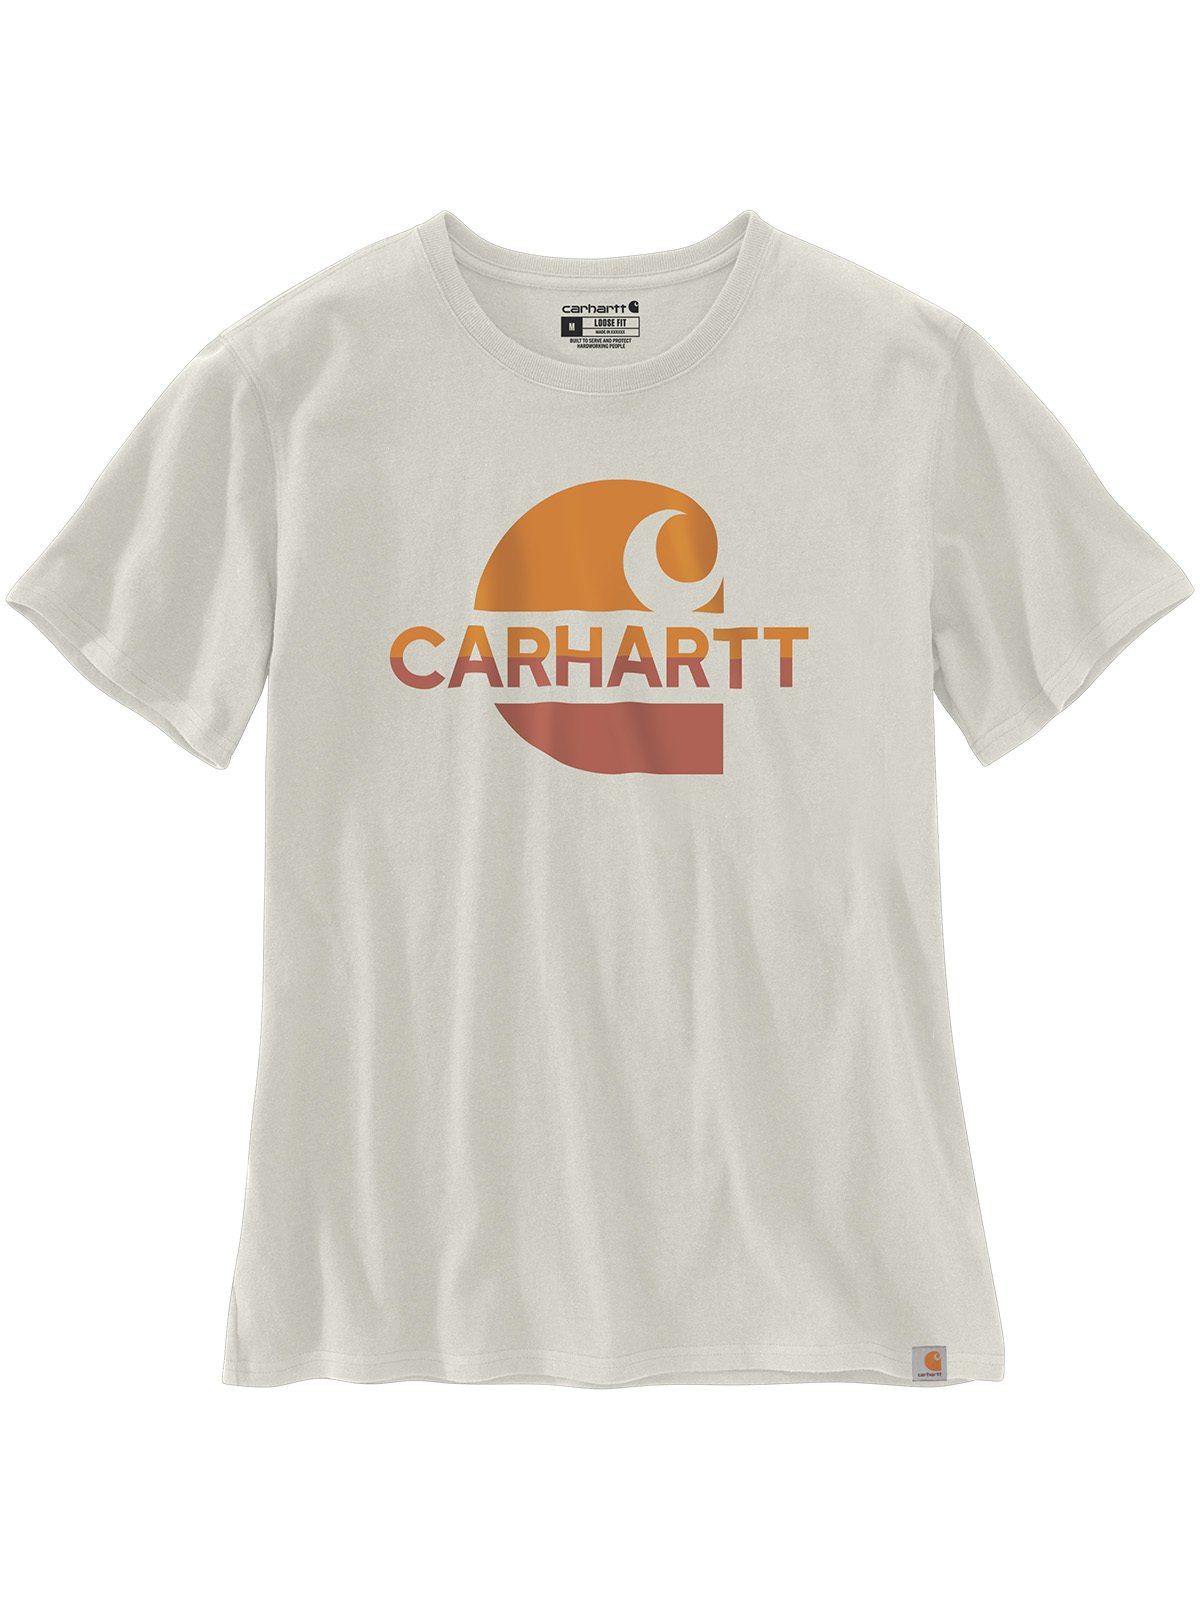 Carhartt T-Shirt Carhartt Graphic T-Shirt weiß malt